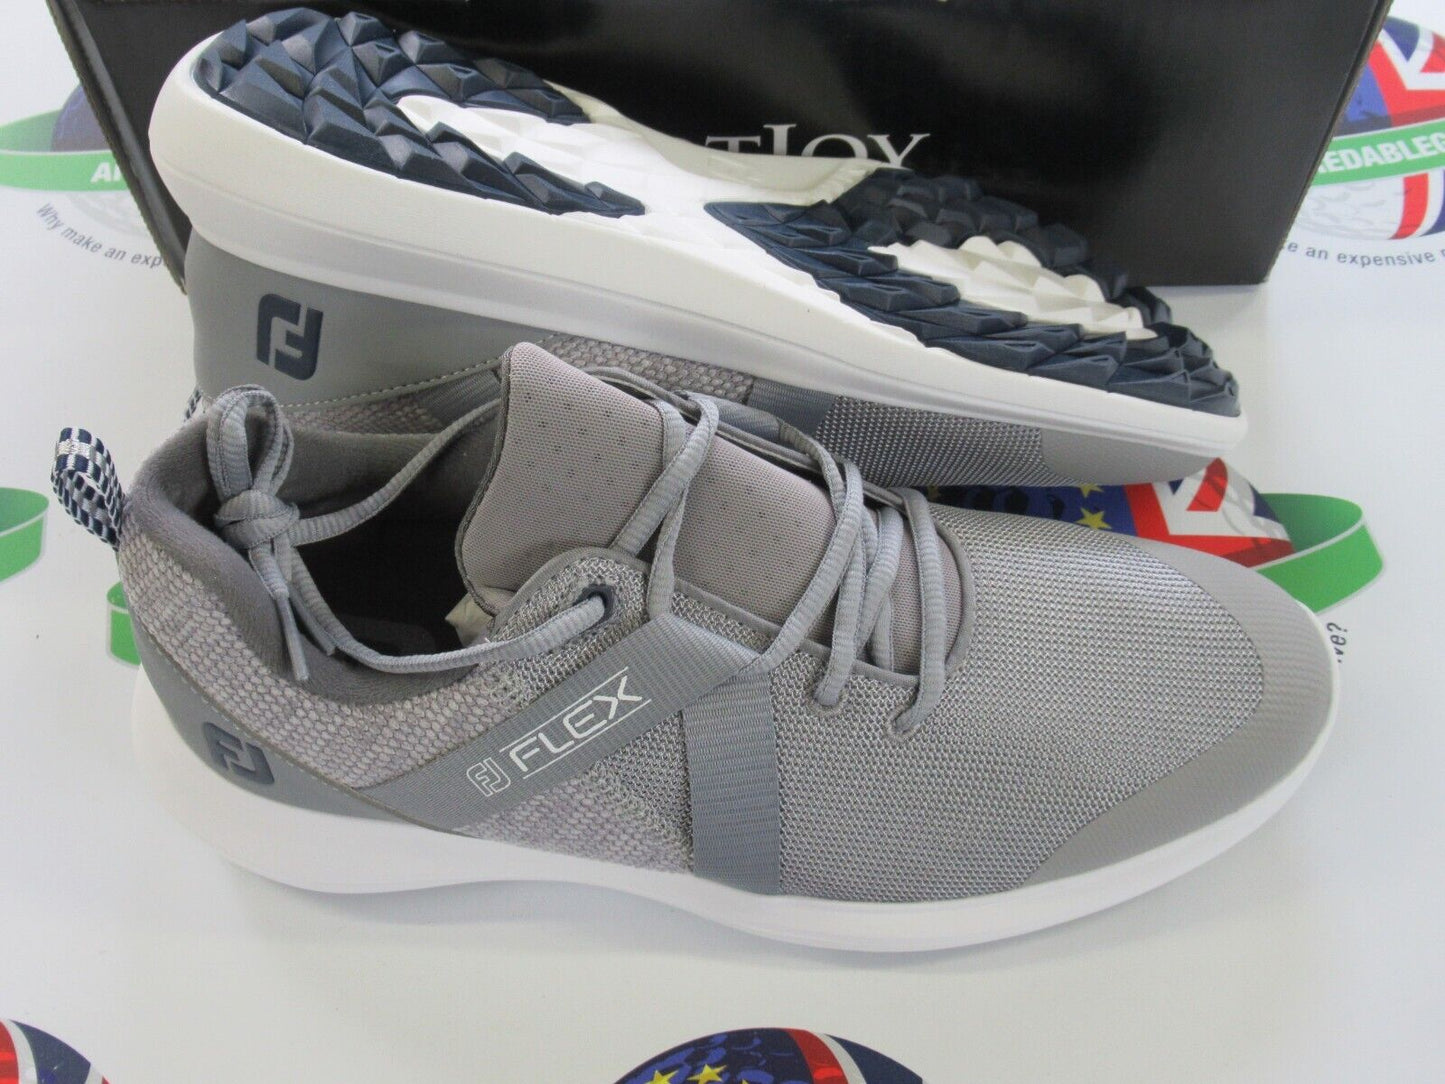 footjoy flex golf shoes 56106k grey uk size 8.5 medium